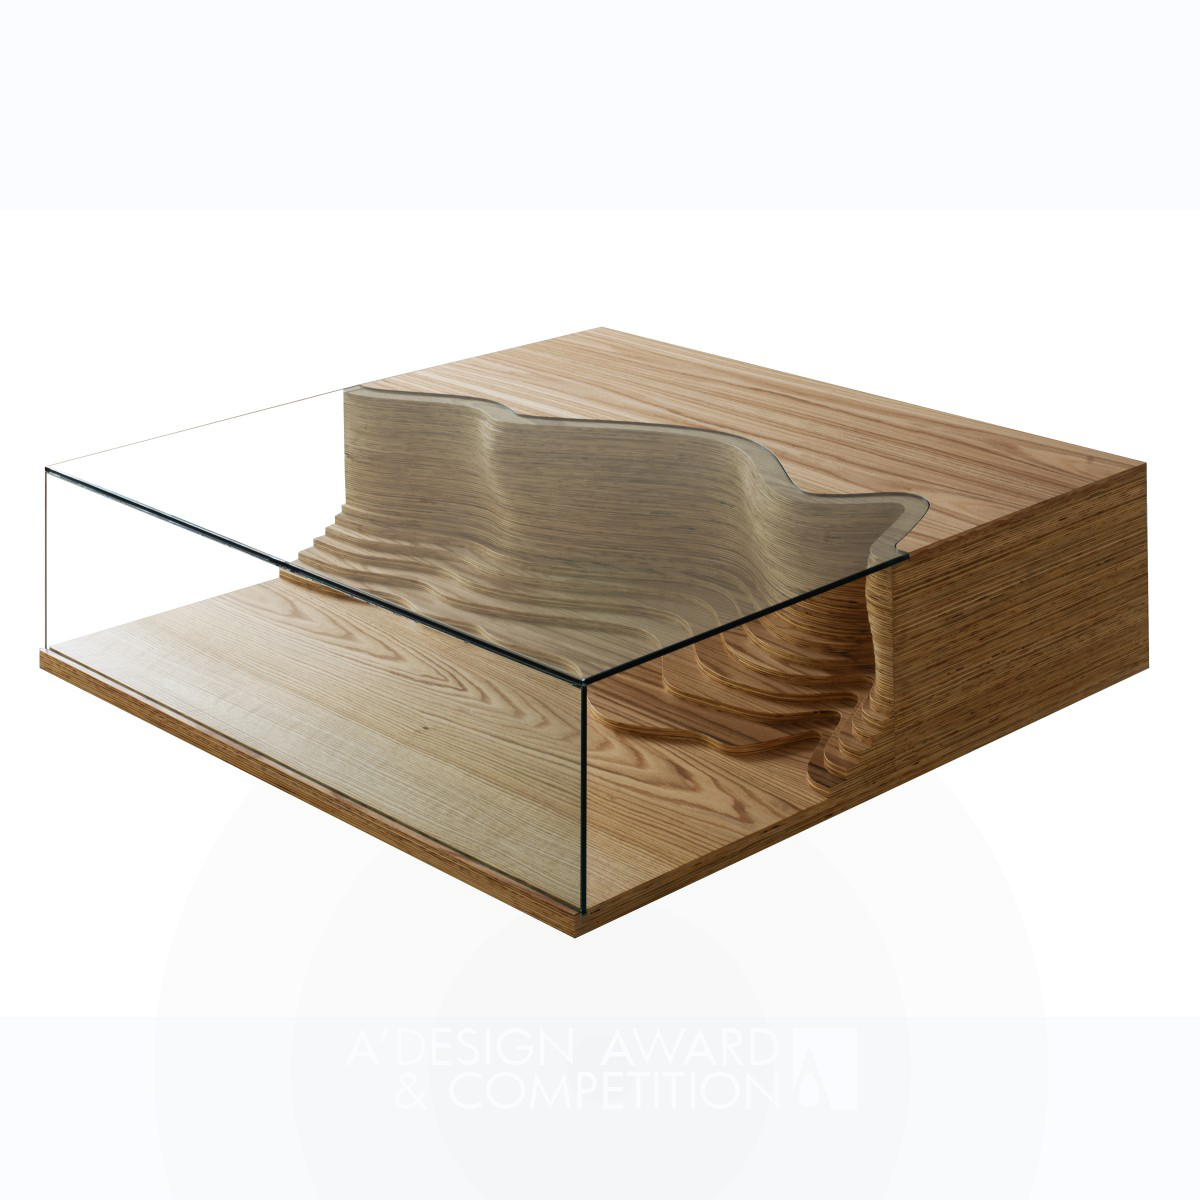 FALESIA CENTER TABLE by Mula Preta Design